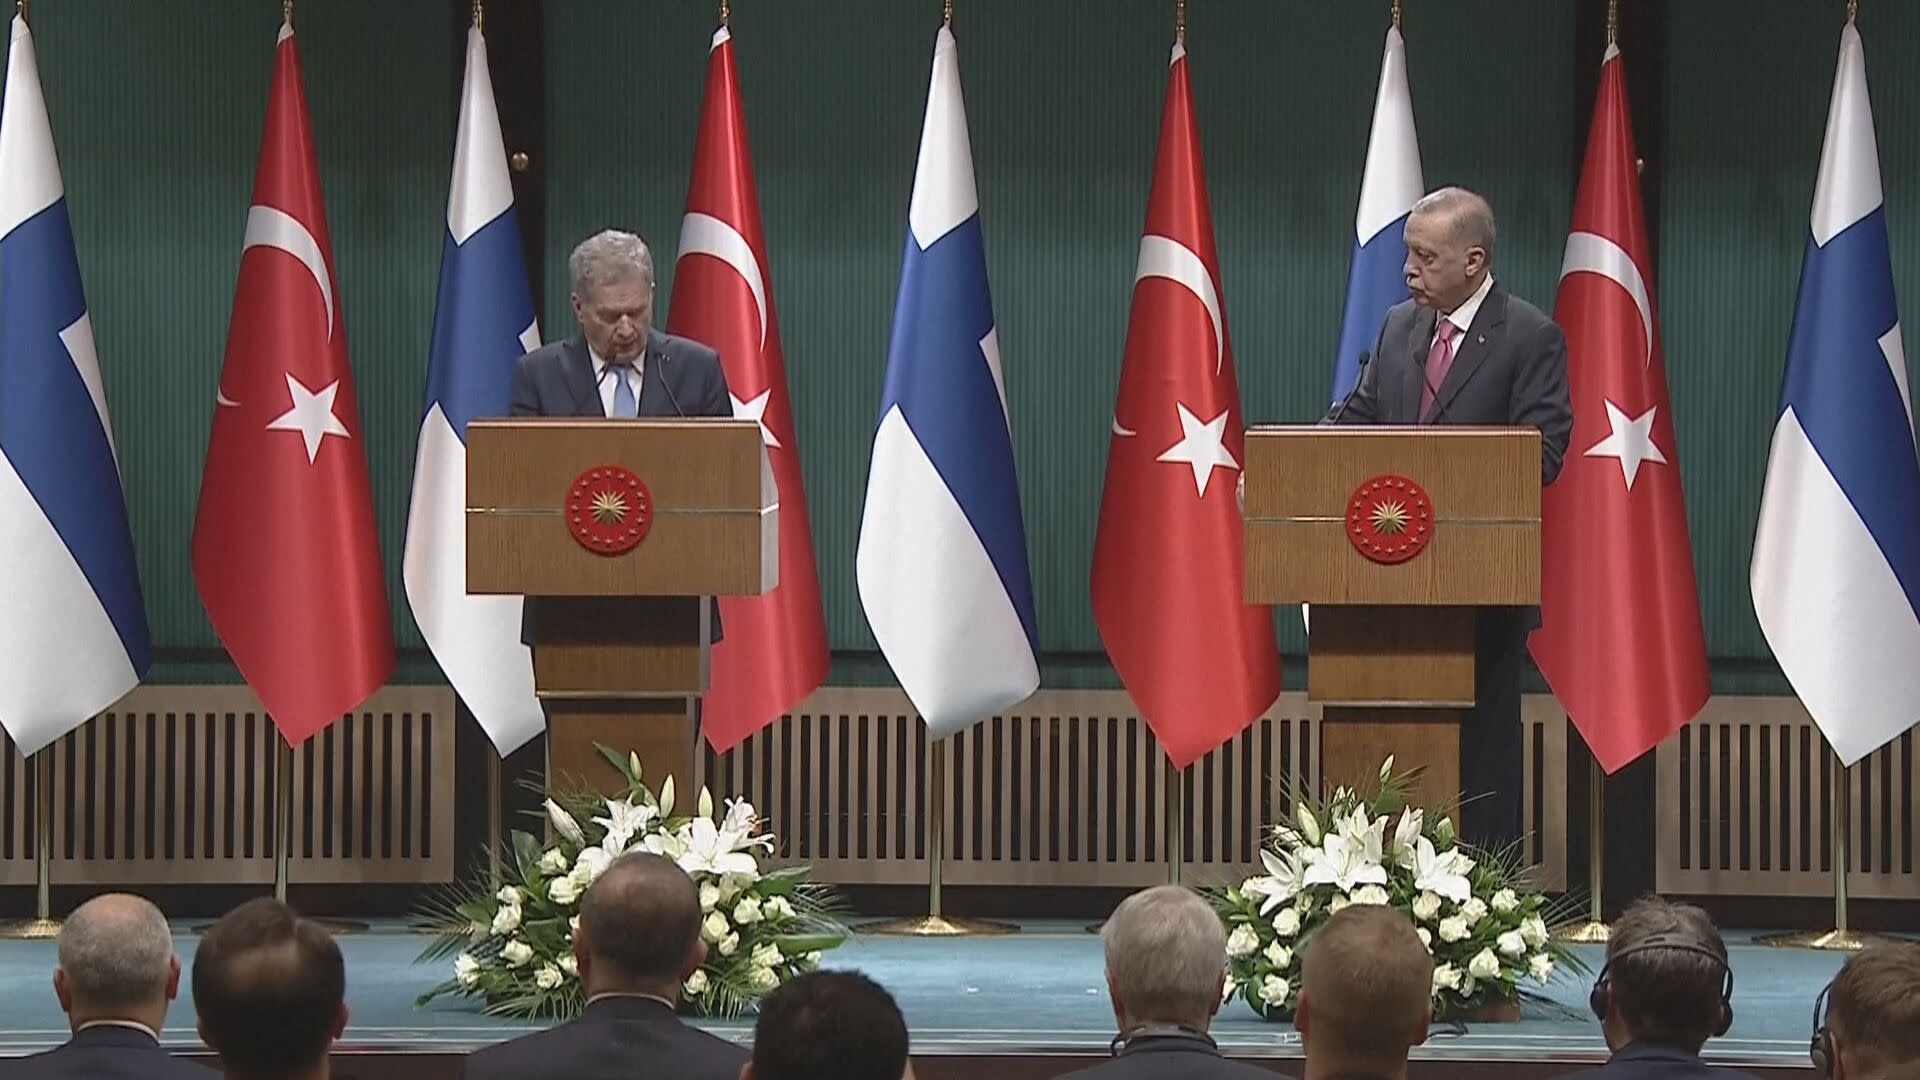 Turki mula meratifikasi keahlian NATO Finland, kata Erdogan